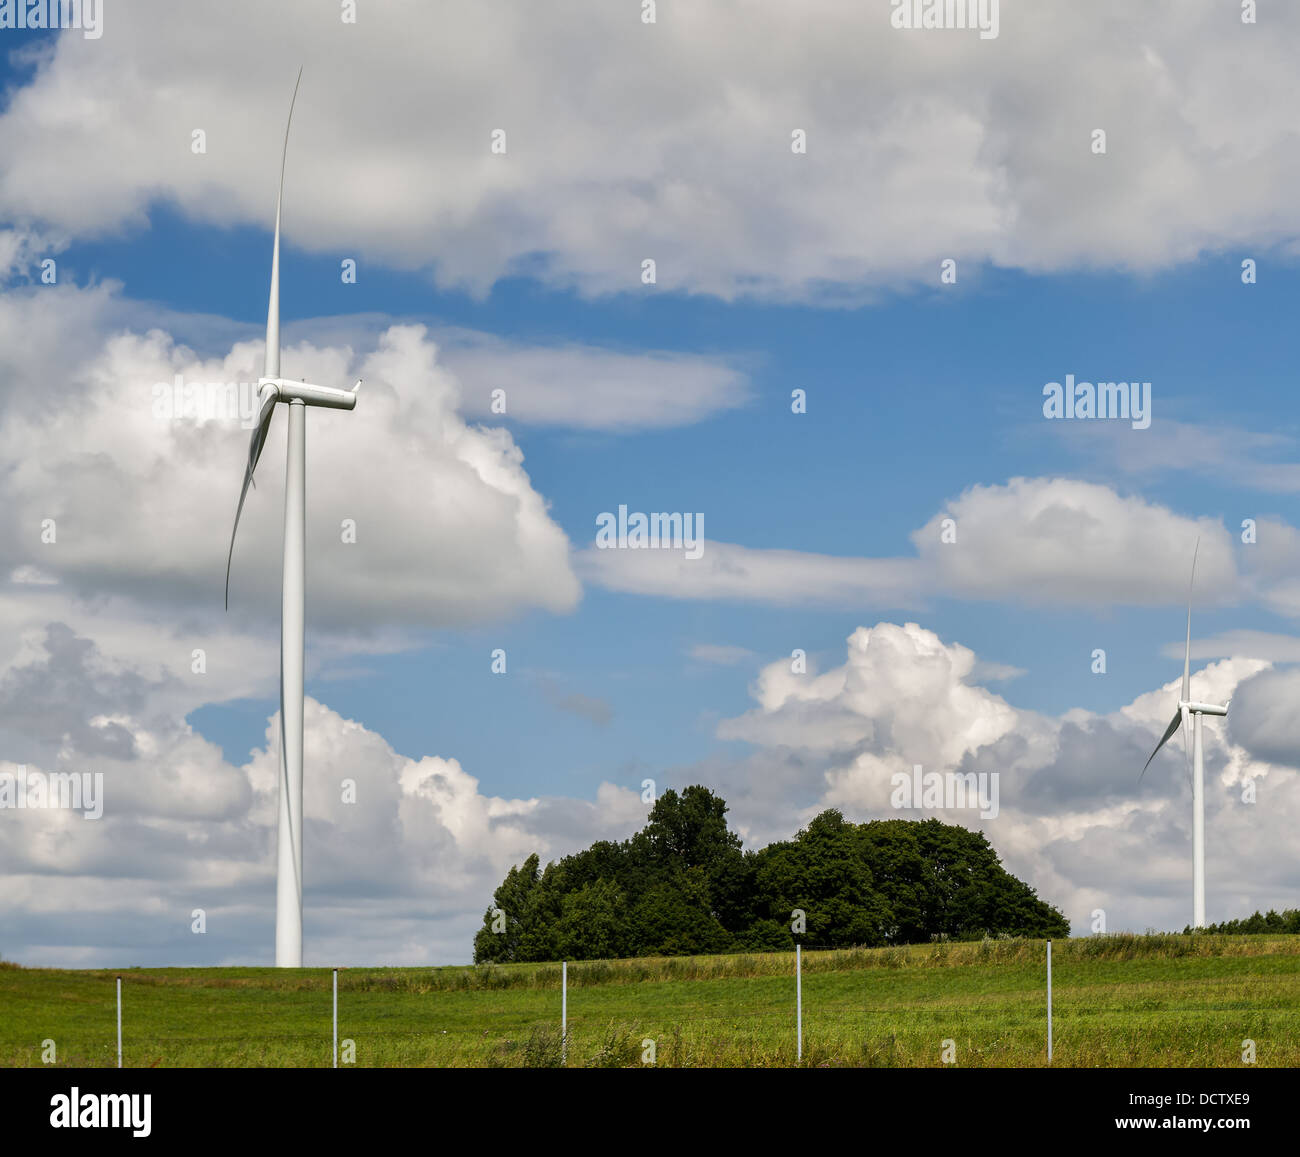 Dreiblatt-Windgenerator mit einer horizontalen Drehachse am Himmelshintergrund Stockfoto